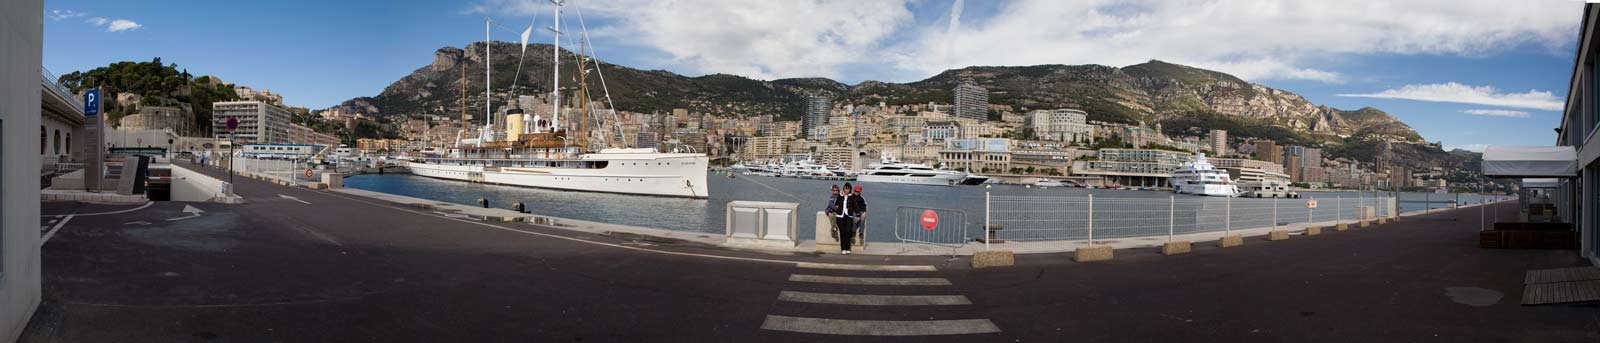 Overlooking the harbour in Monaco